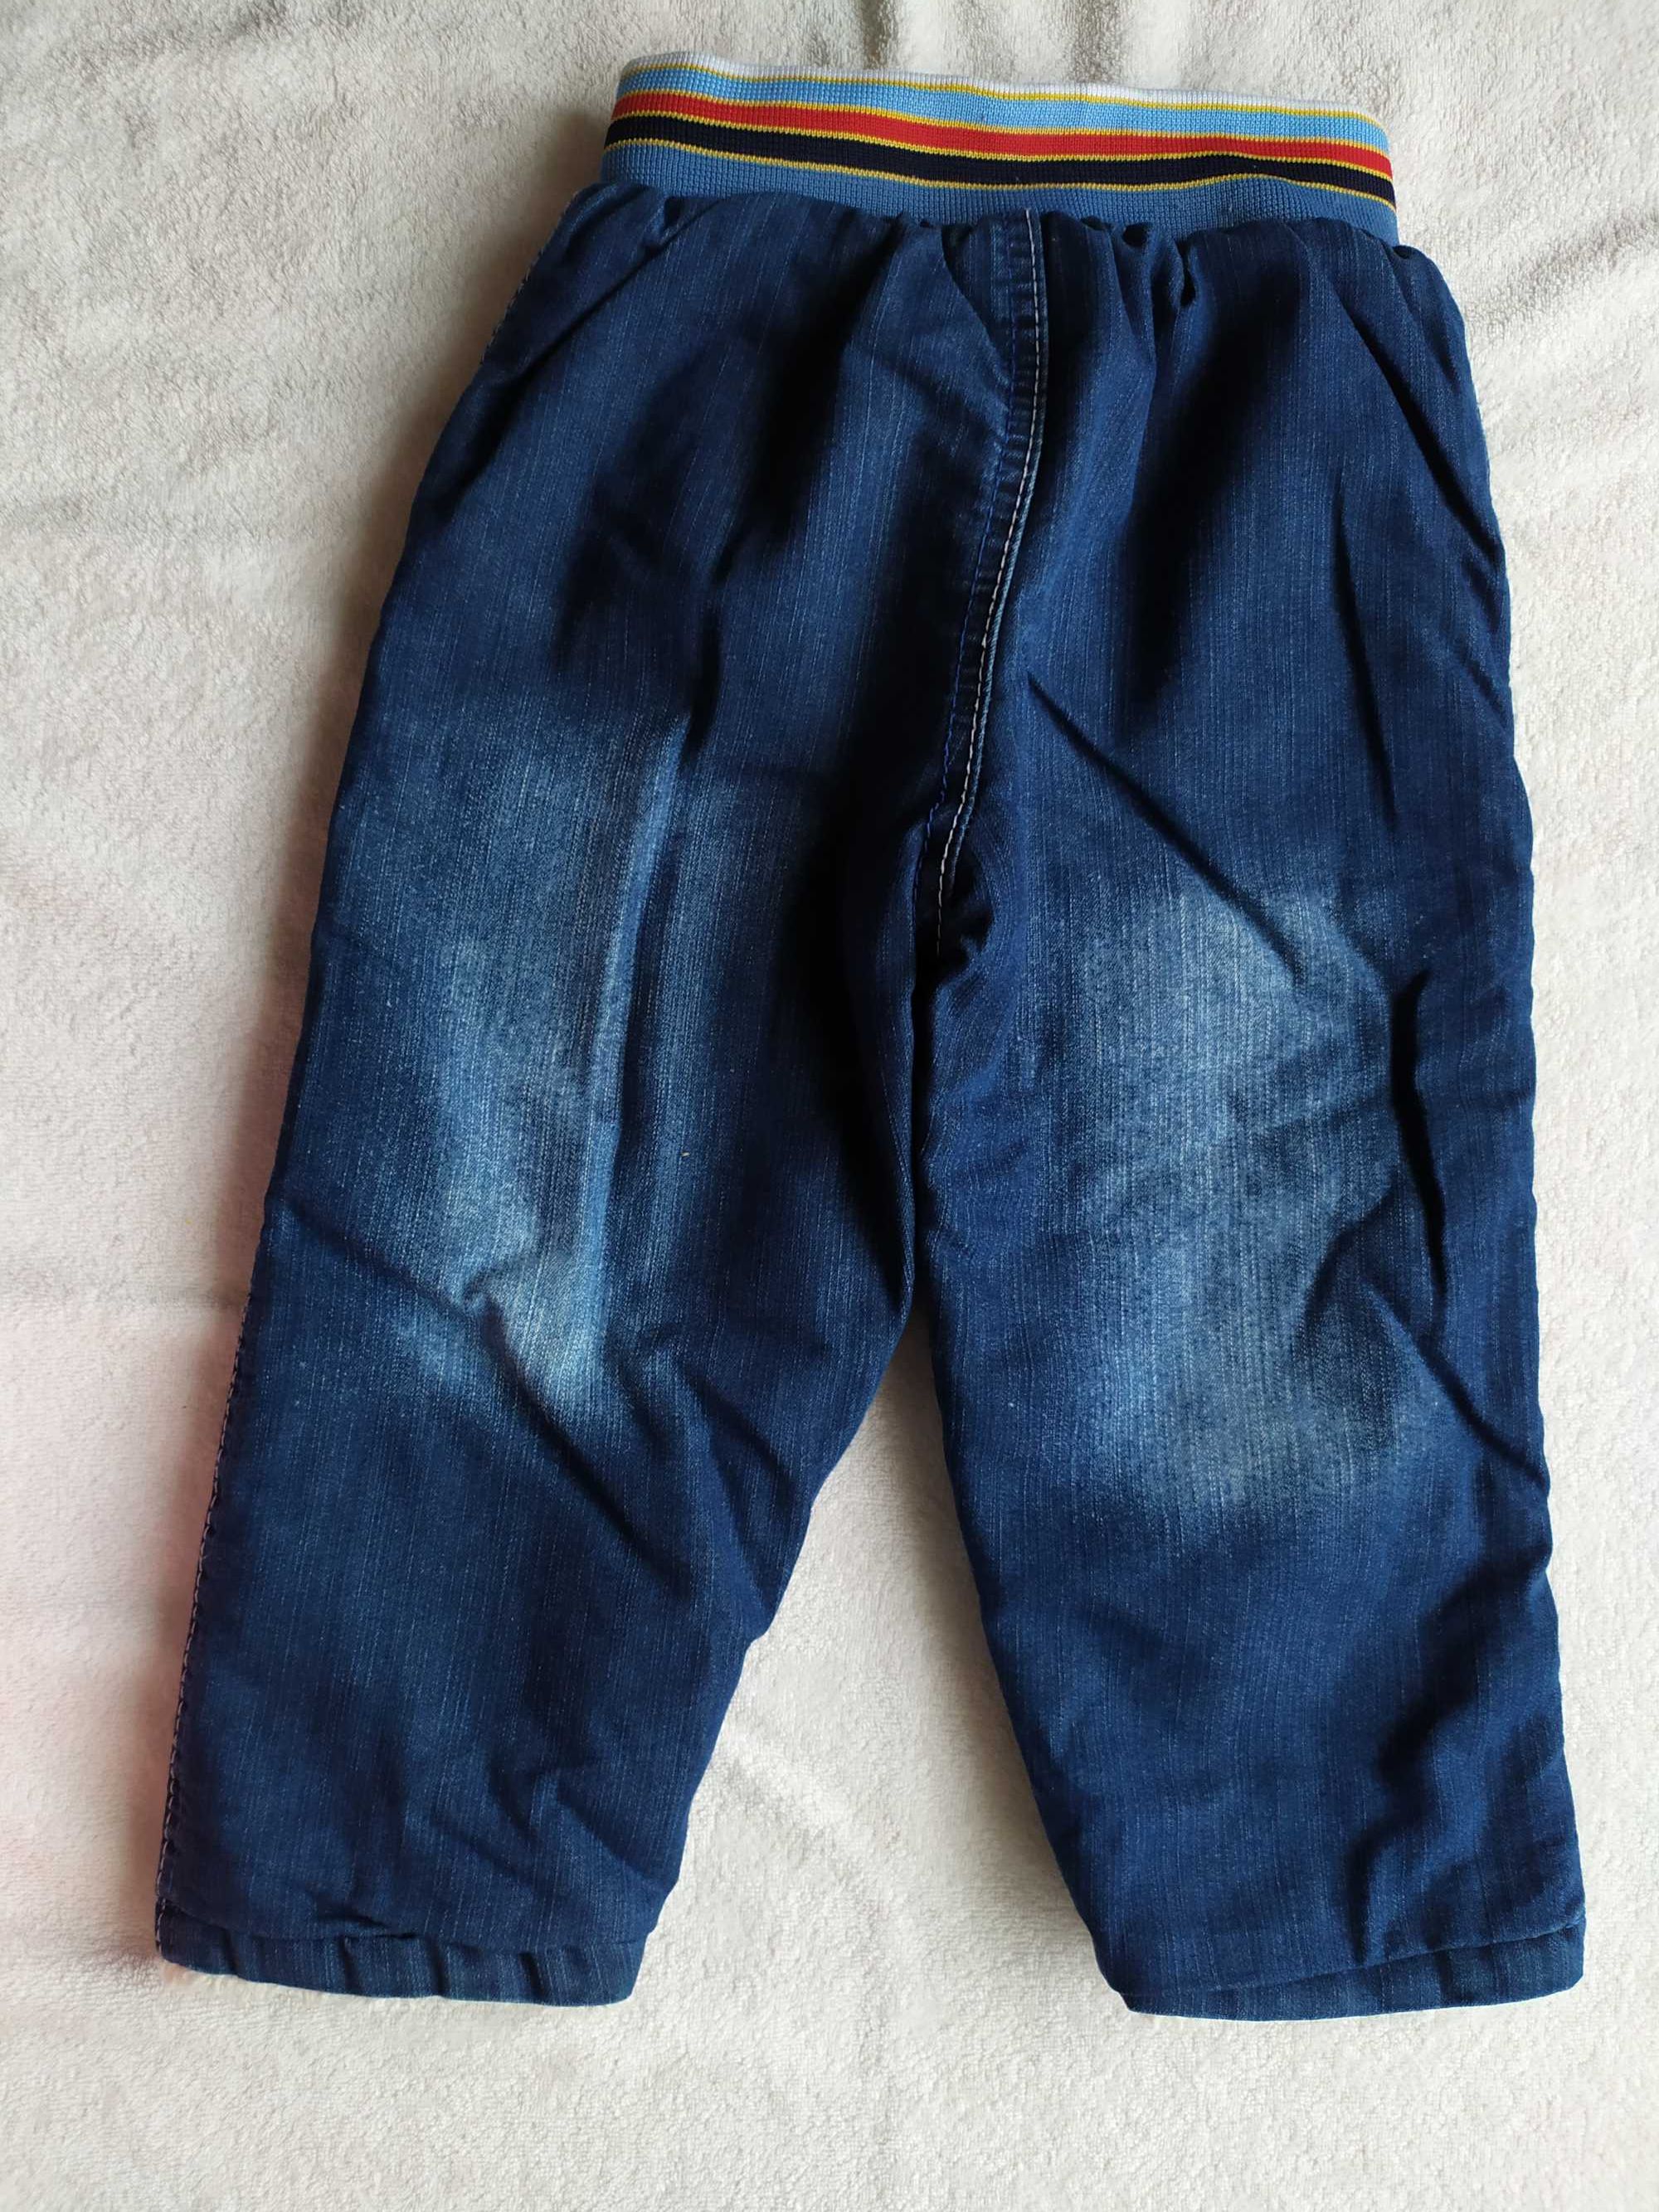 Детские теплые штаны, 18-24месяца